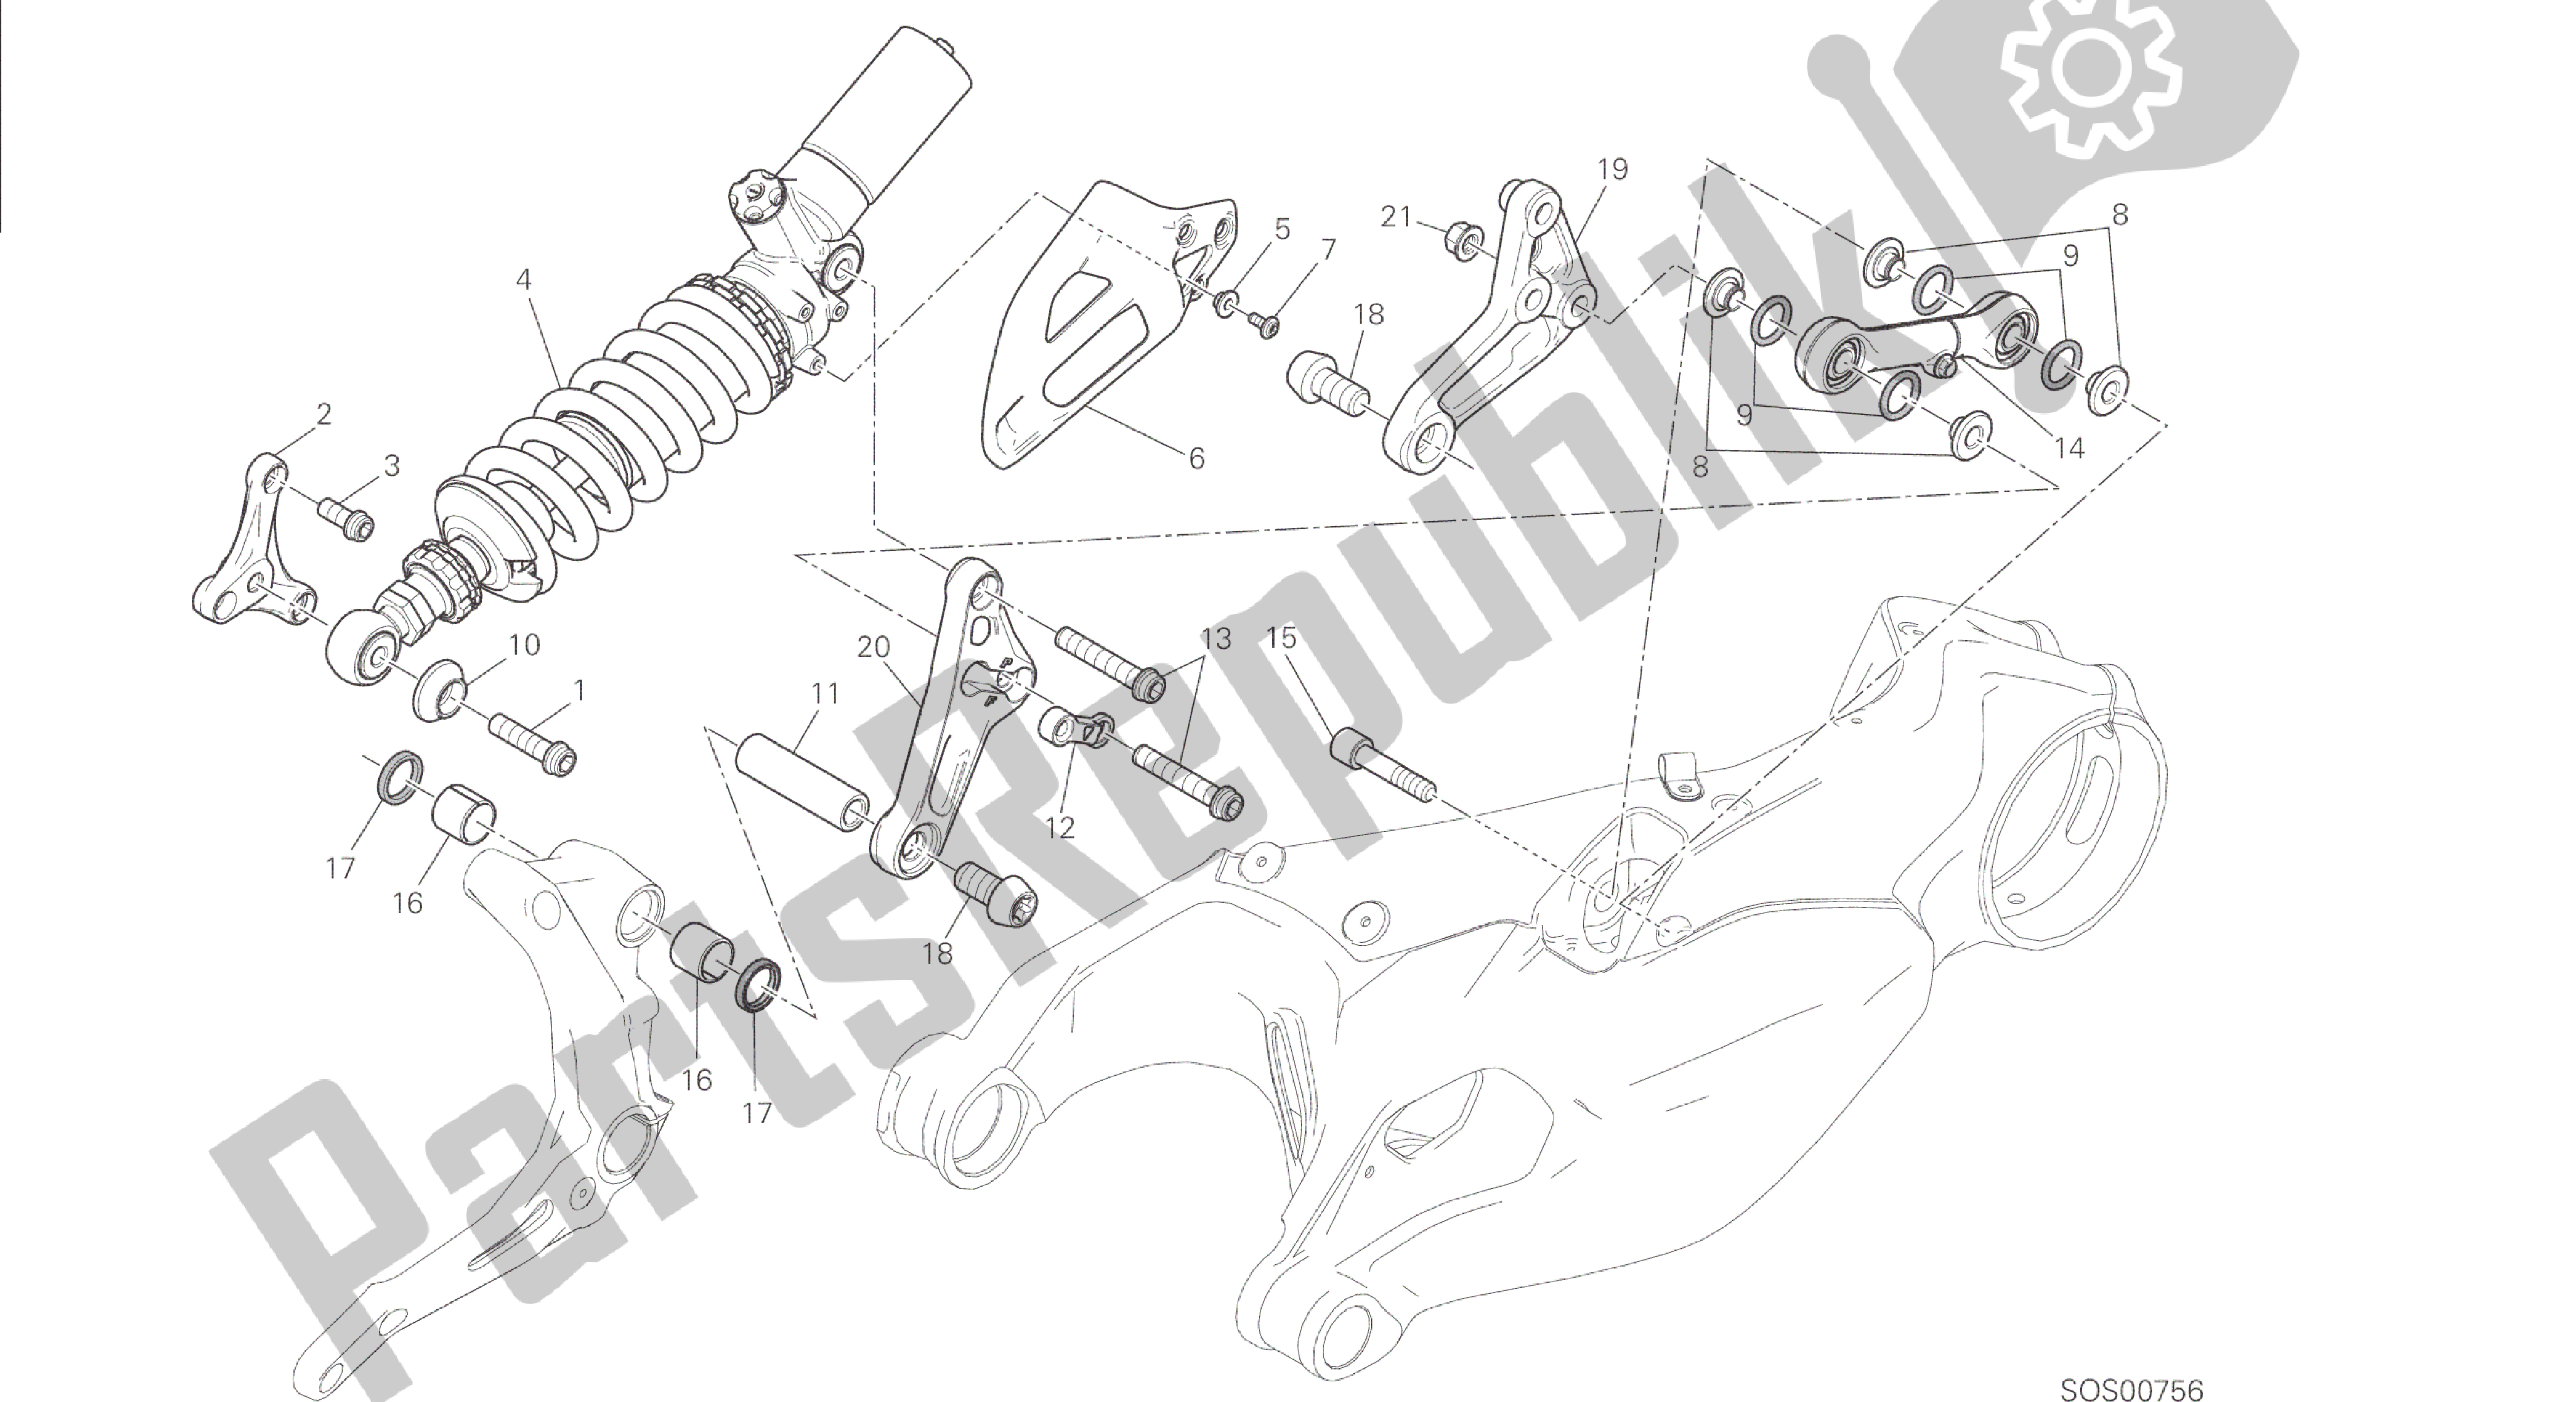 Todas las partes para Dibujo 028 - Sospensione Posteriore [mod: 1299; Xst: Marco De Grupo Aus, Eur, Fra, Jap, Twn] de Ducati Panigale 1299 2015